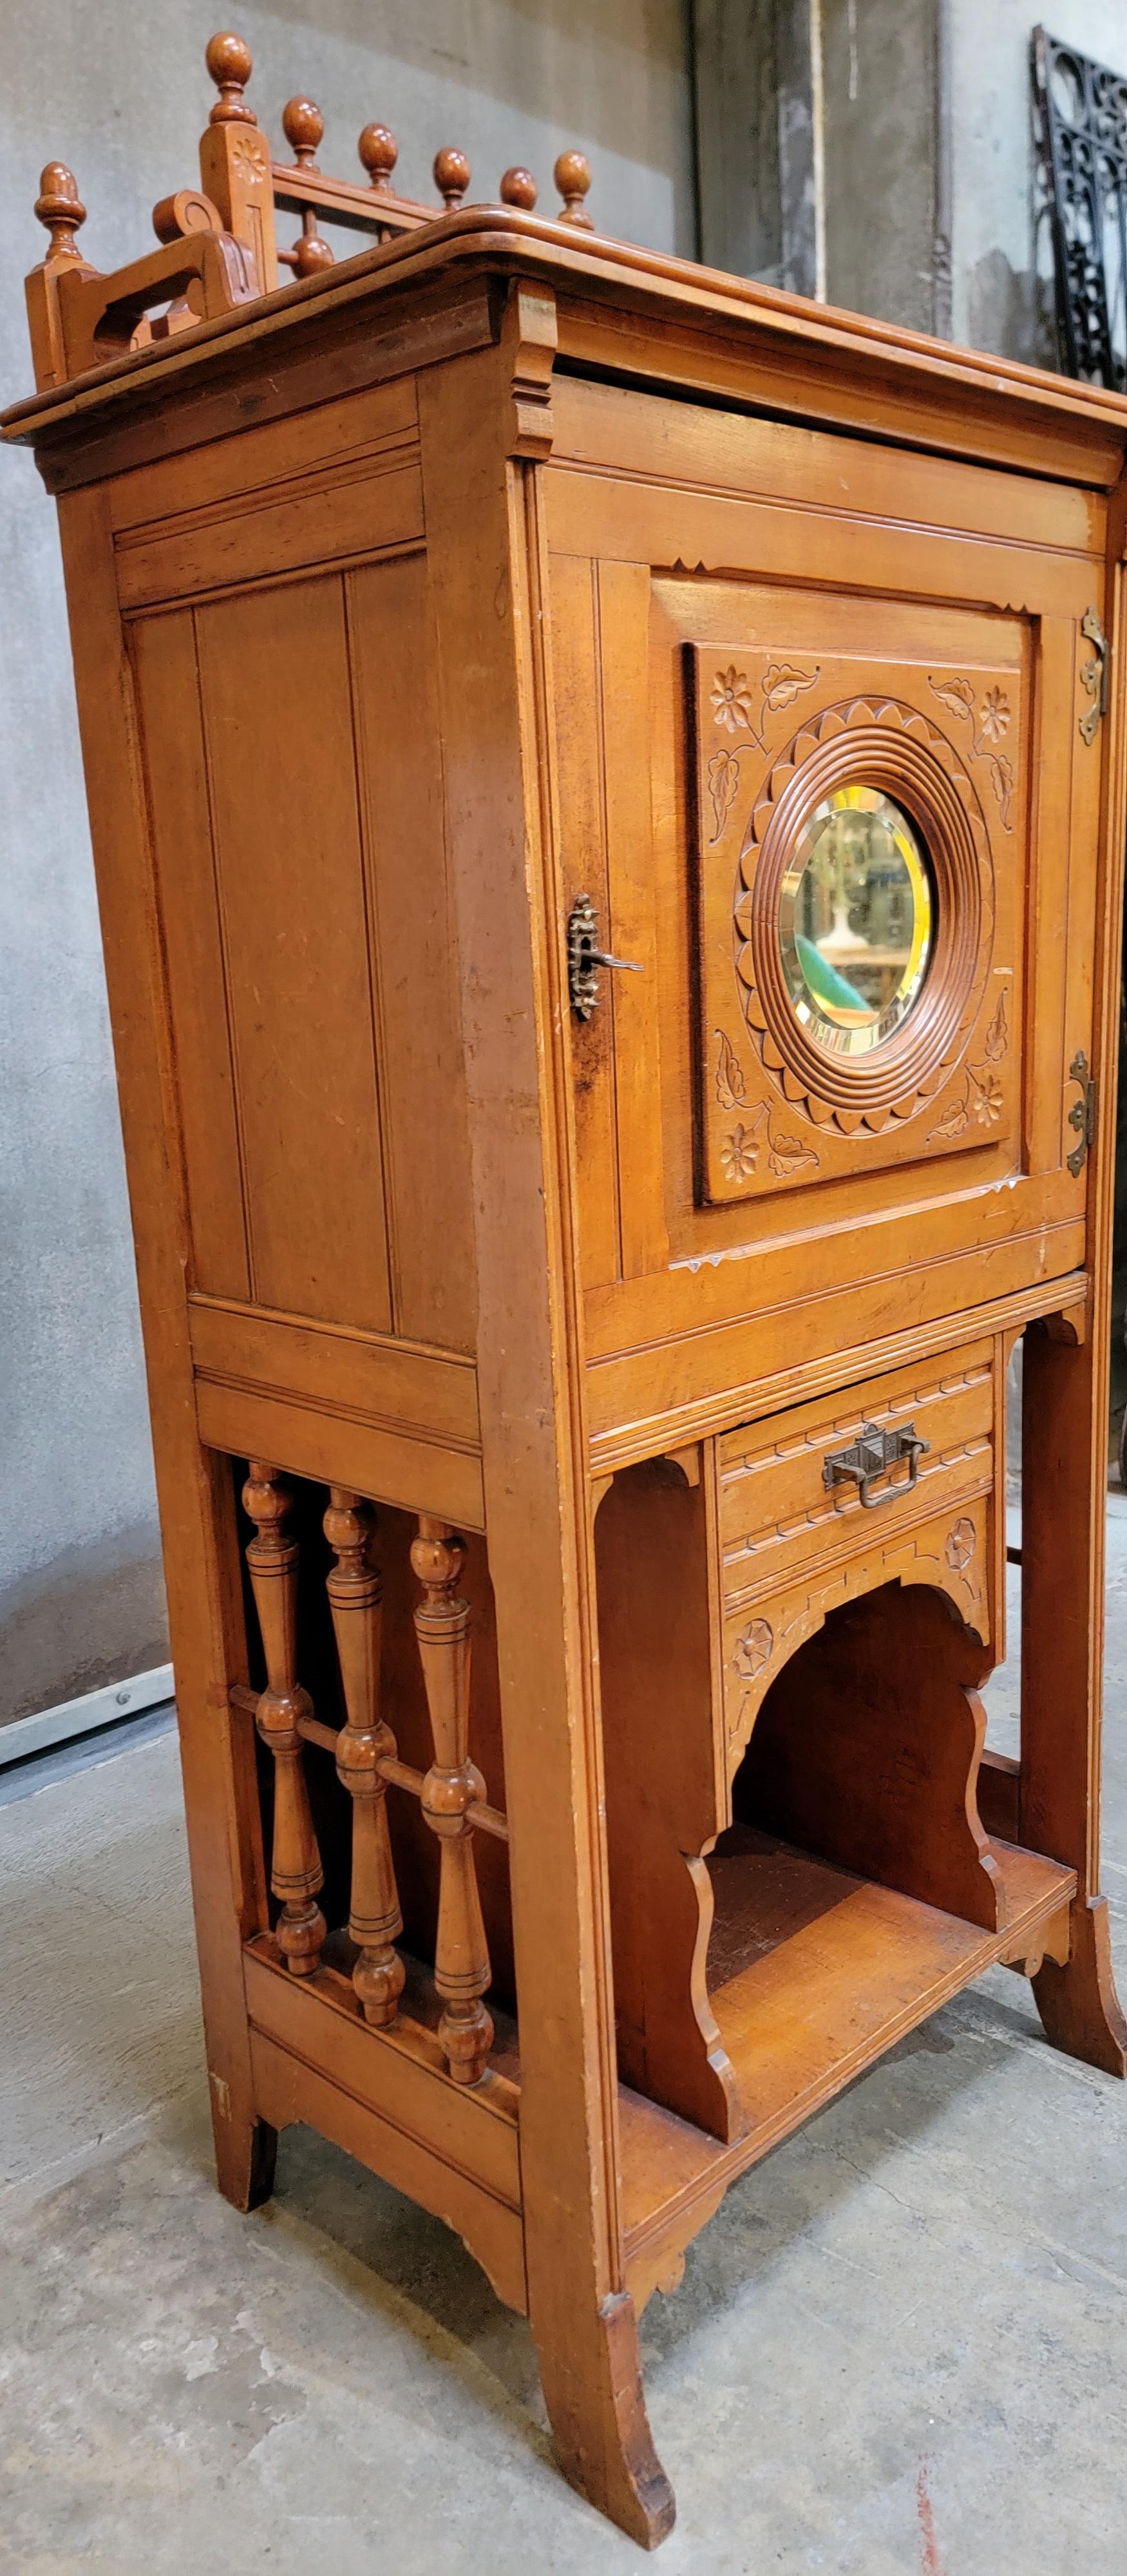 Charmant petit meuble à musique avec détails en forme de bâtons et de boules. Miroir circulaire biseauté sur la porte, étagères à l'intérieur du meuble. Finition d'origine avec usure et décoloration dues à l'âge. 